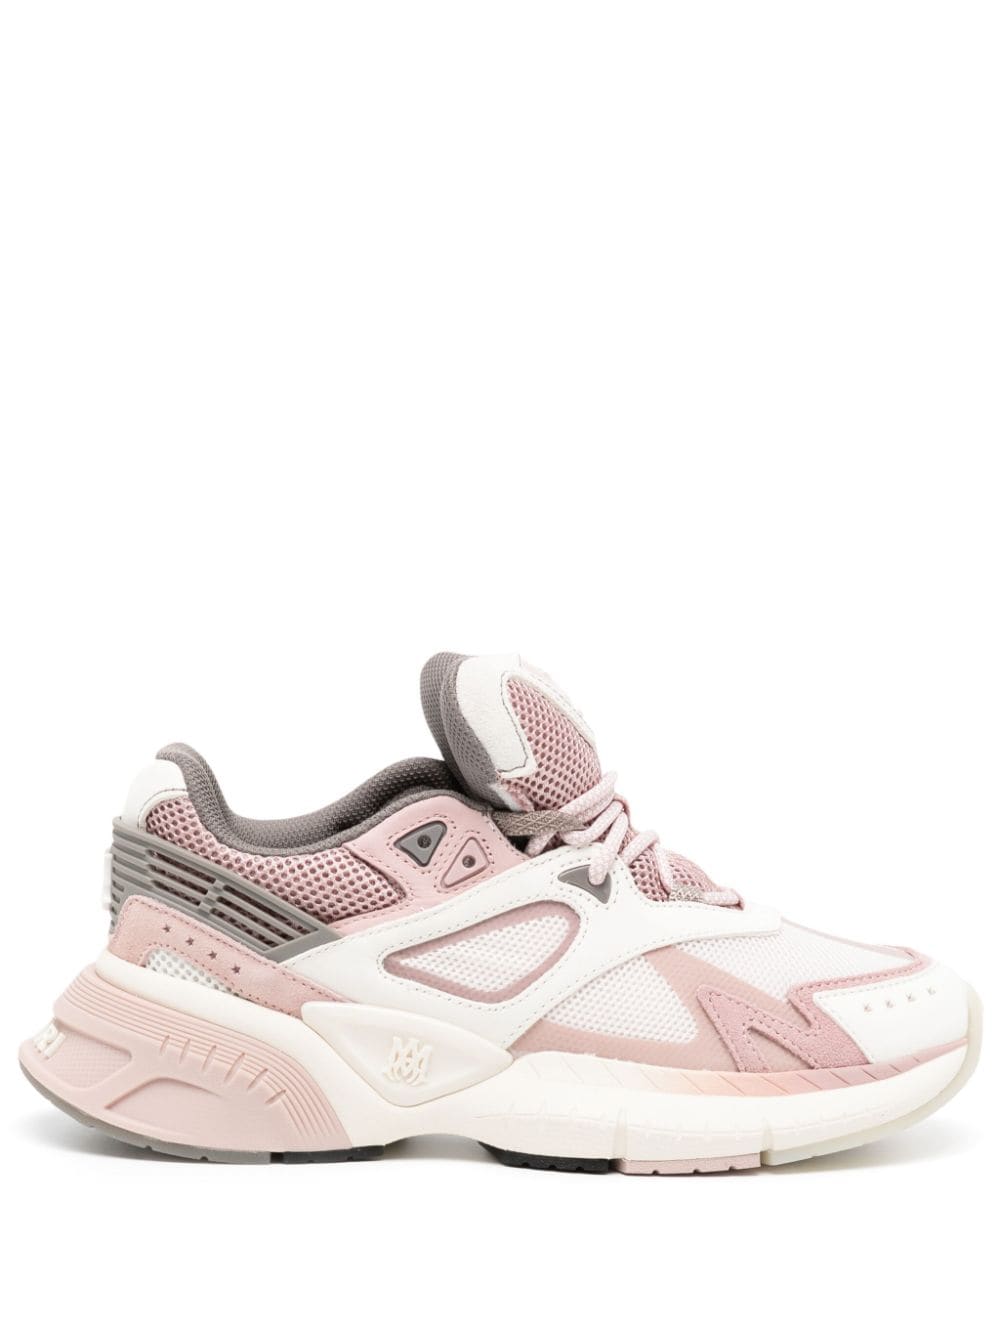 AMIRI MA Runner chunky sneakers - Pink von AMIRI